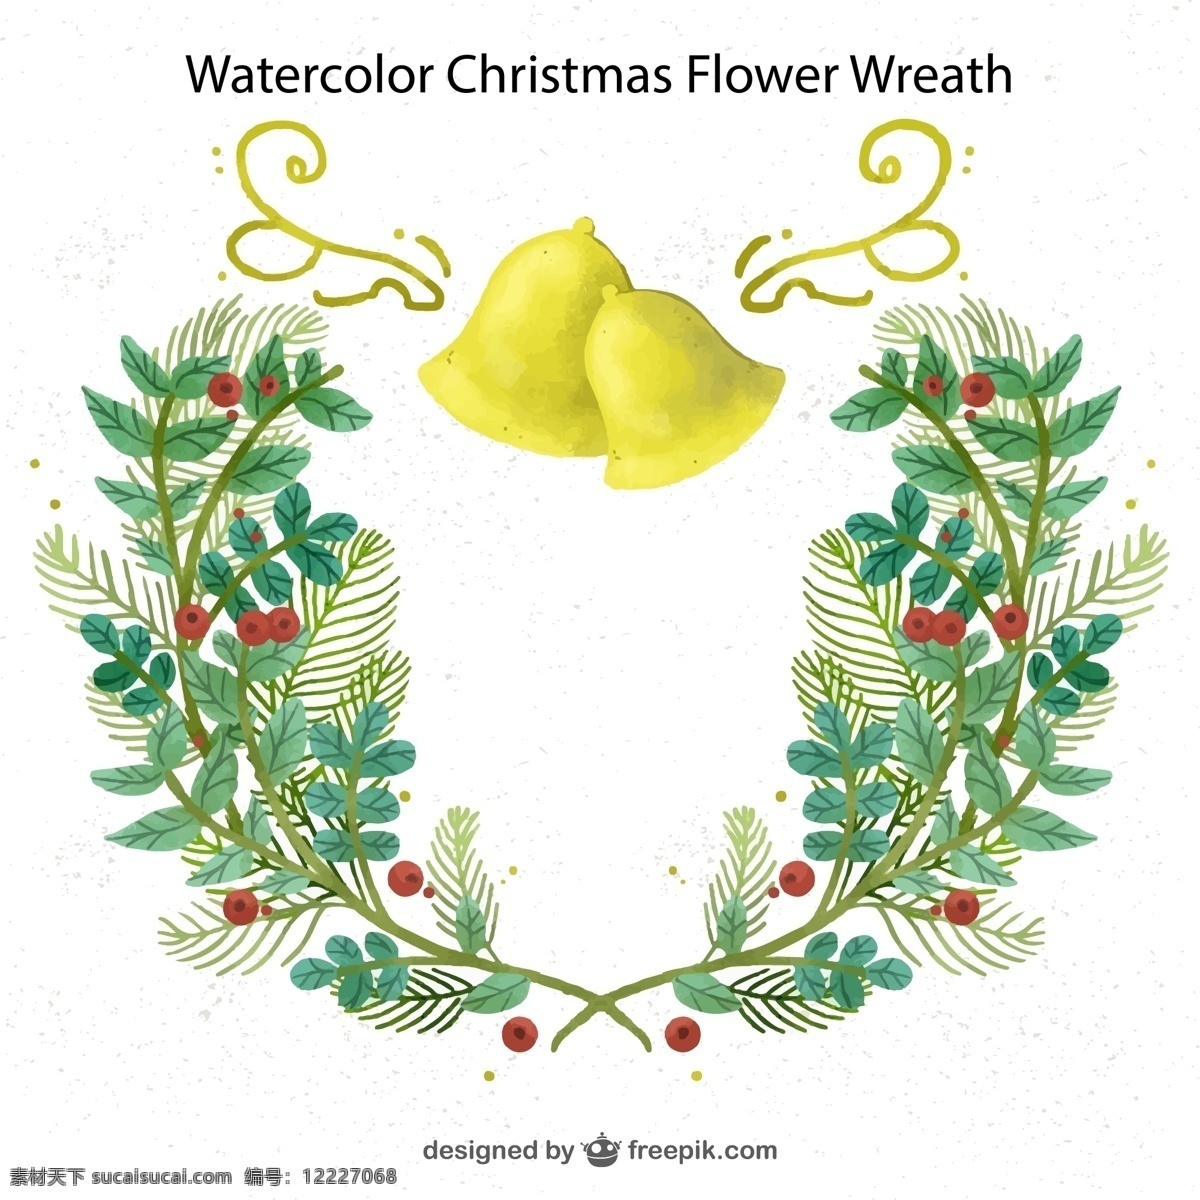 圣诞 绘 花环 铃铛 水彩 圣诞节 矢量图 格式 矢量 高清图片